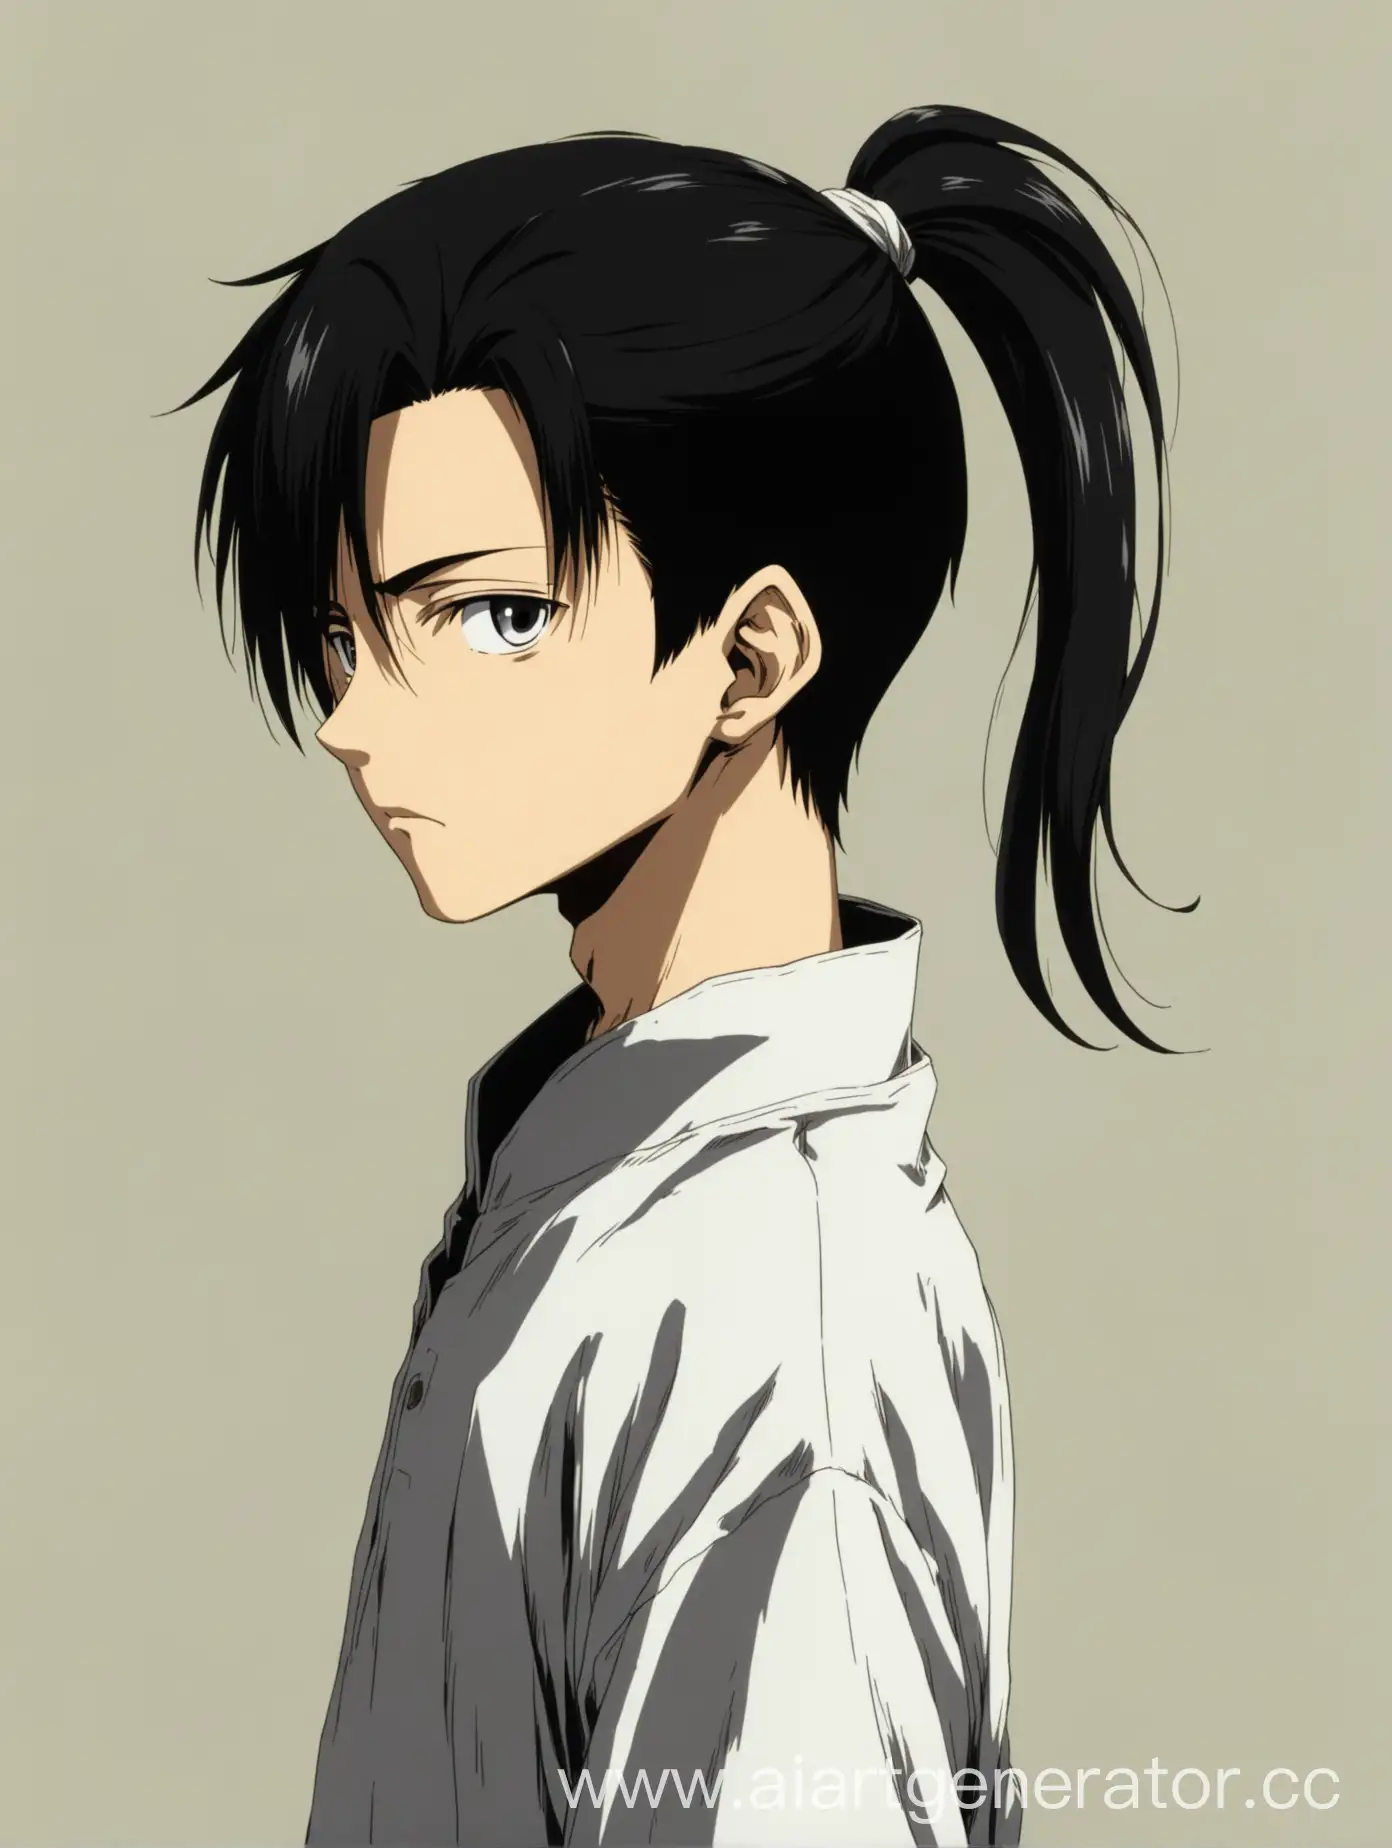 молодой и красивый аниме парень примерно 16 лет в полный рост, с белыми волосами завязанными в хвостик сзади, на висках и затылке виднеются очень выбритые короткие черные волосы